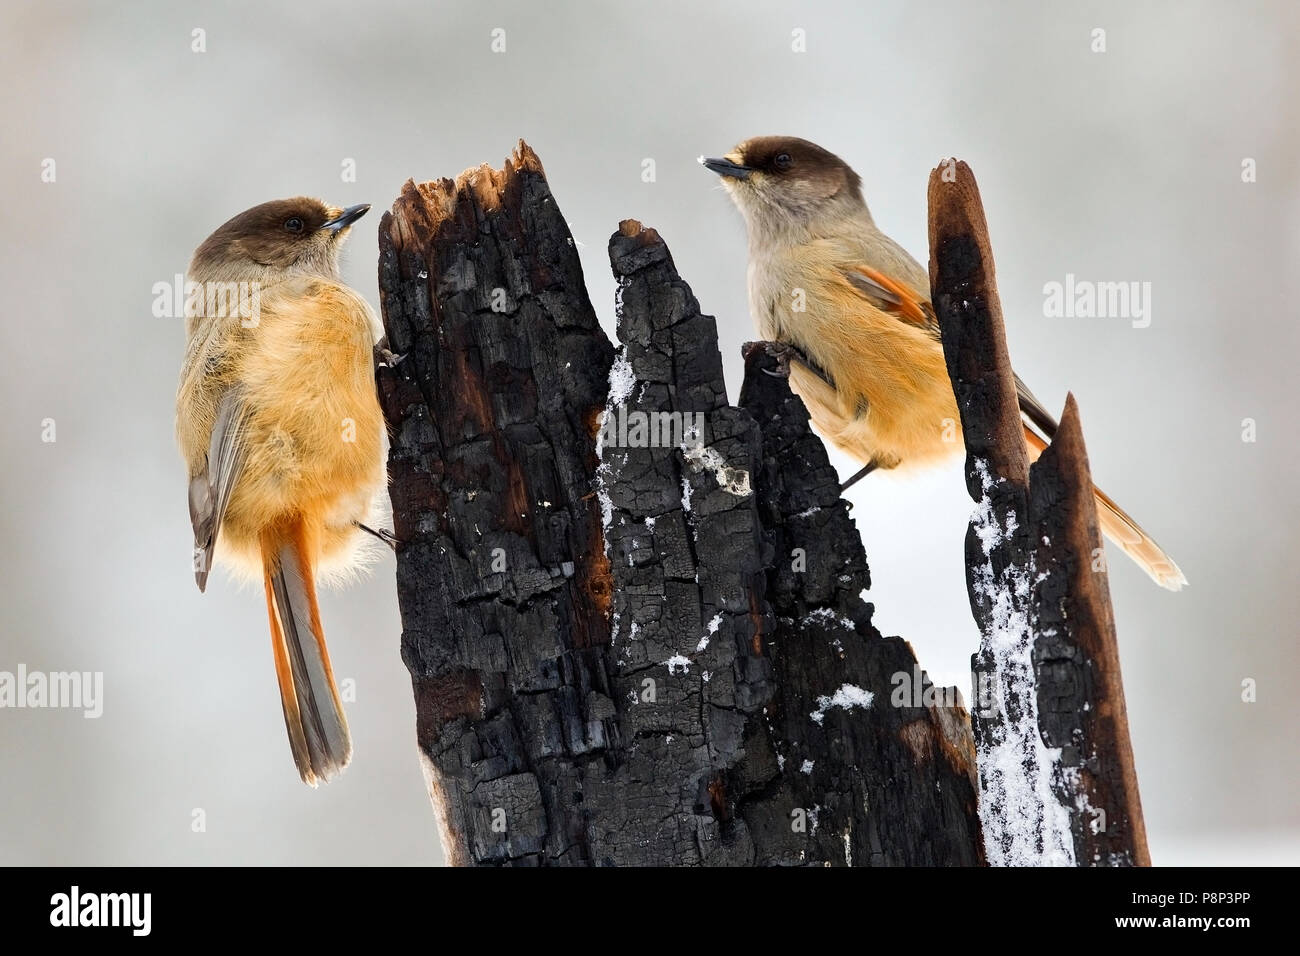 2 Siberian Jays on tree Stump Stock Photo